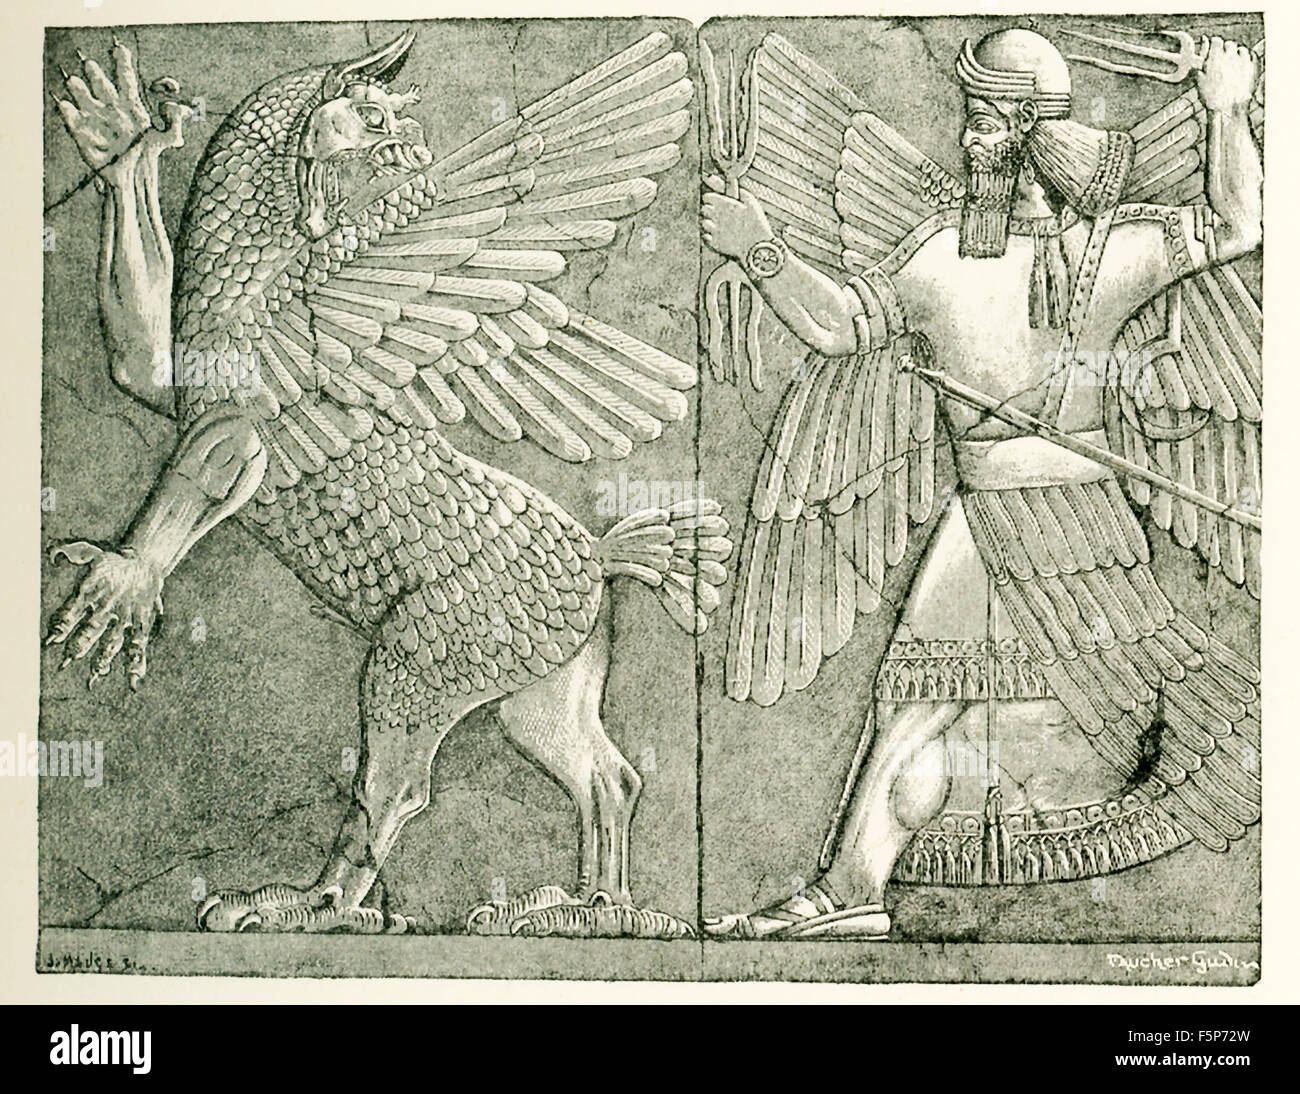 Questa antica Chiesa Assira rilievo mostra il dio Bel-Merodach (anche ortografato Marduk), armati con thunderbolt, facendo la battaglia con il tumultuoso Tiamat (figura sulla sinistra). Marduk fu tutto potente, un guaritore e mediatore per gli esseri umani. Marduk fu chiamato a salvare l'umanità dal male. Tiamat era il simbolo del caos. La lotta tra Marduk e Tiamat era un tema preferito per gli antichi artisti assira. È stato disegnato da Faucher-Gudin per accompagnare il testo in un libro sull antico Egitto e il levante da Gaston Maspero. L'effettivo bassorilievo è da Nimrud e viene conservata nel British Museum. Foto Stock